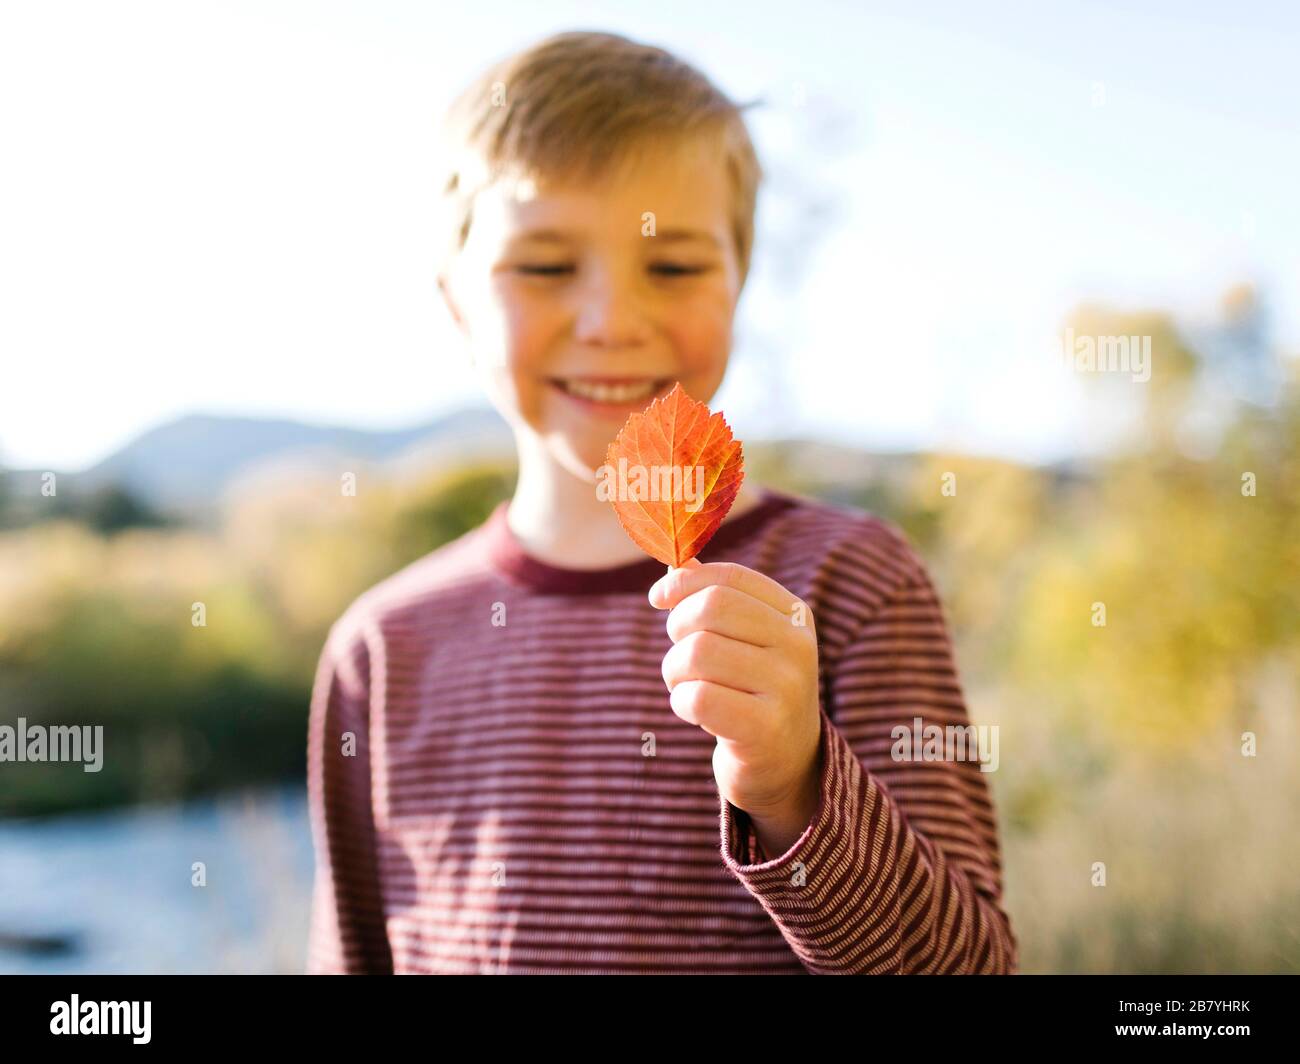 Smiling boy holding autumn leaf Stock Photo